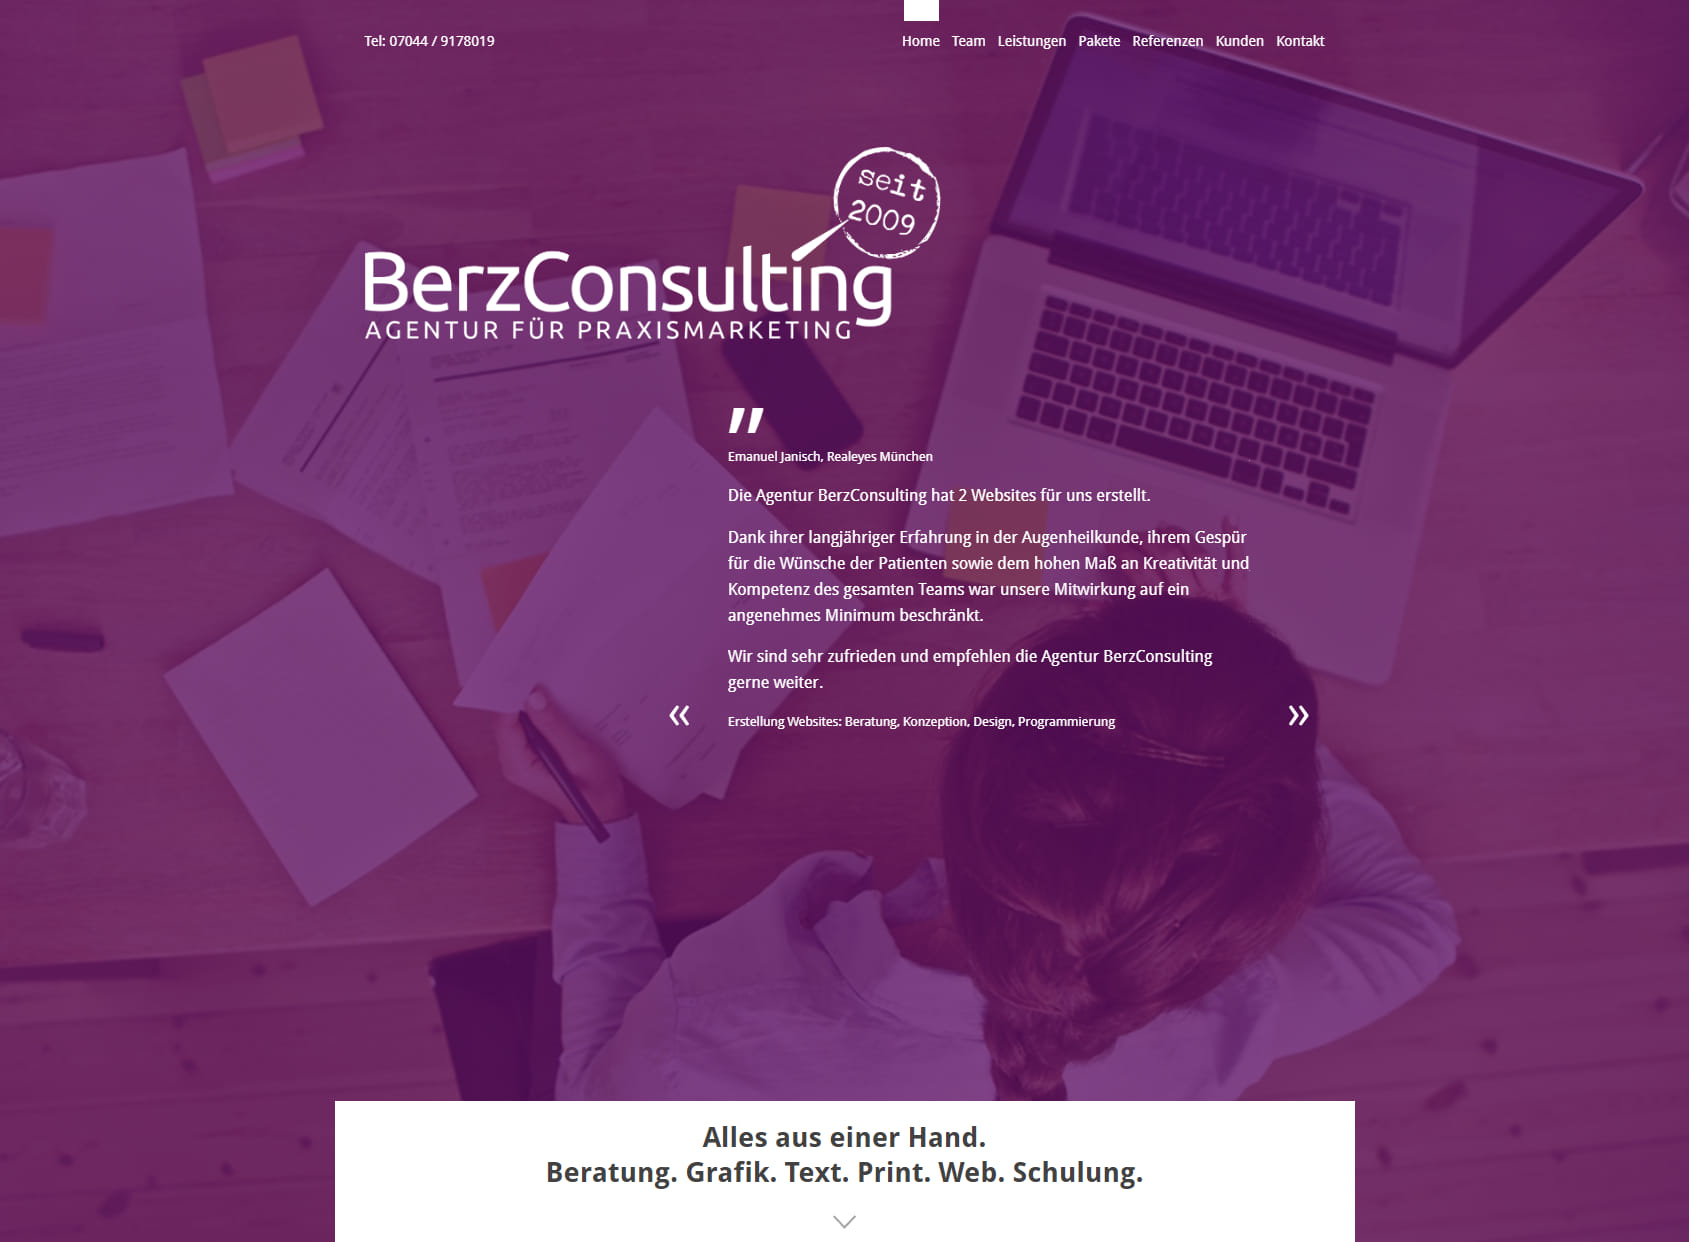 BerzConsulting - Agentur für Praxismarketing